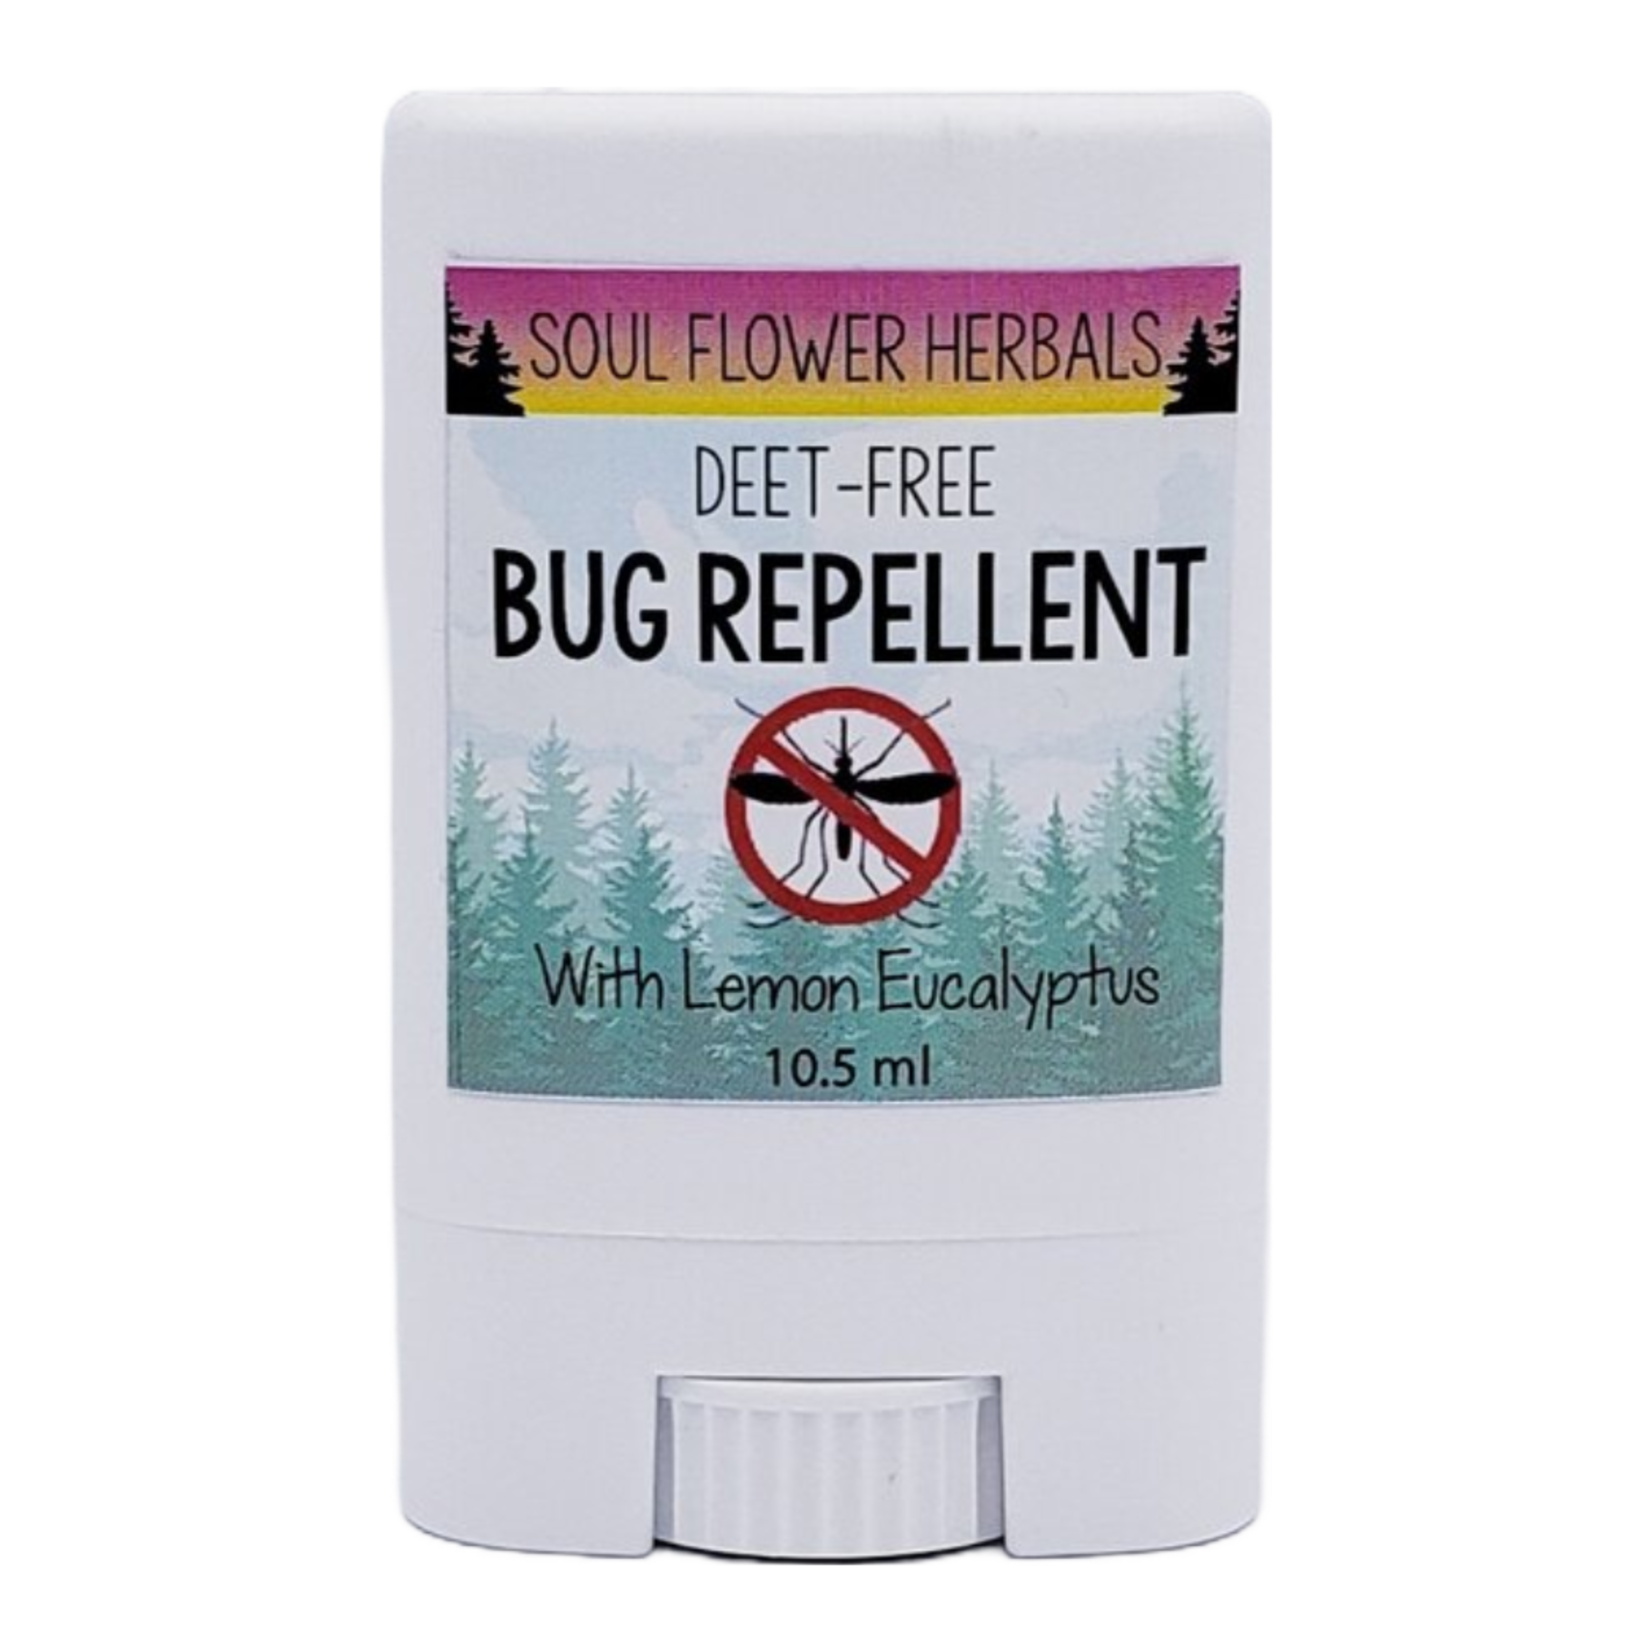 Soul Flower Herbals Bug Repellent Stick